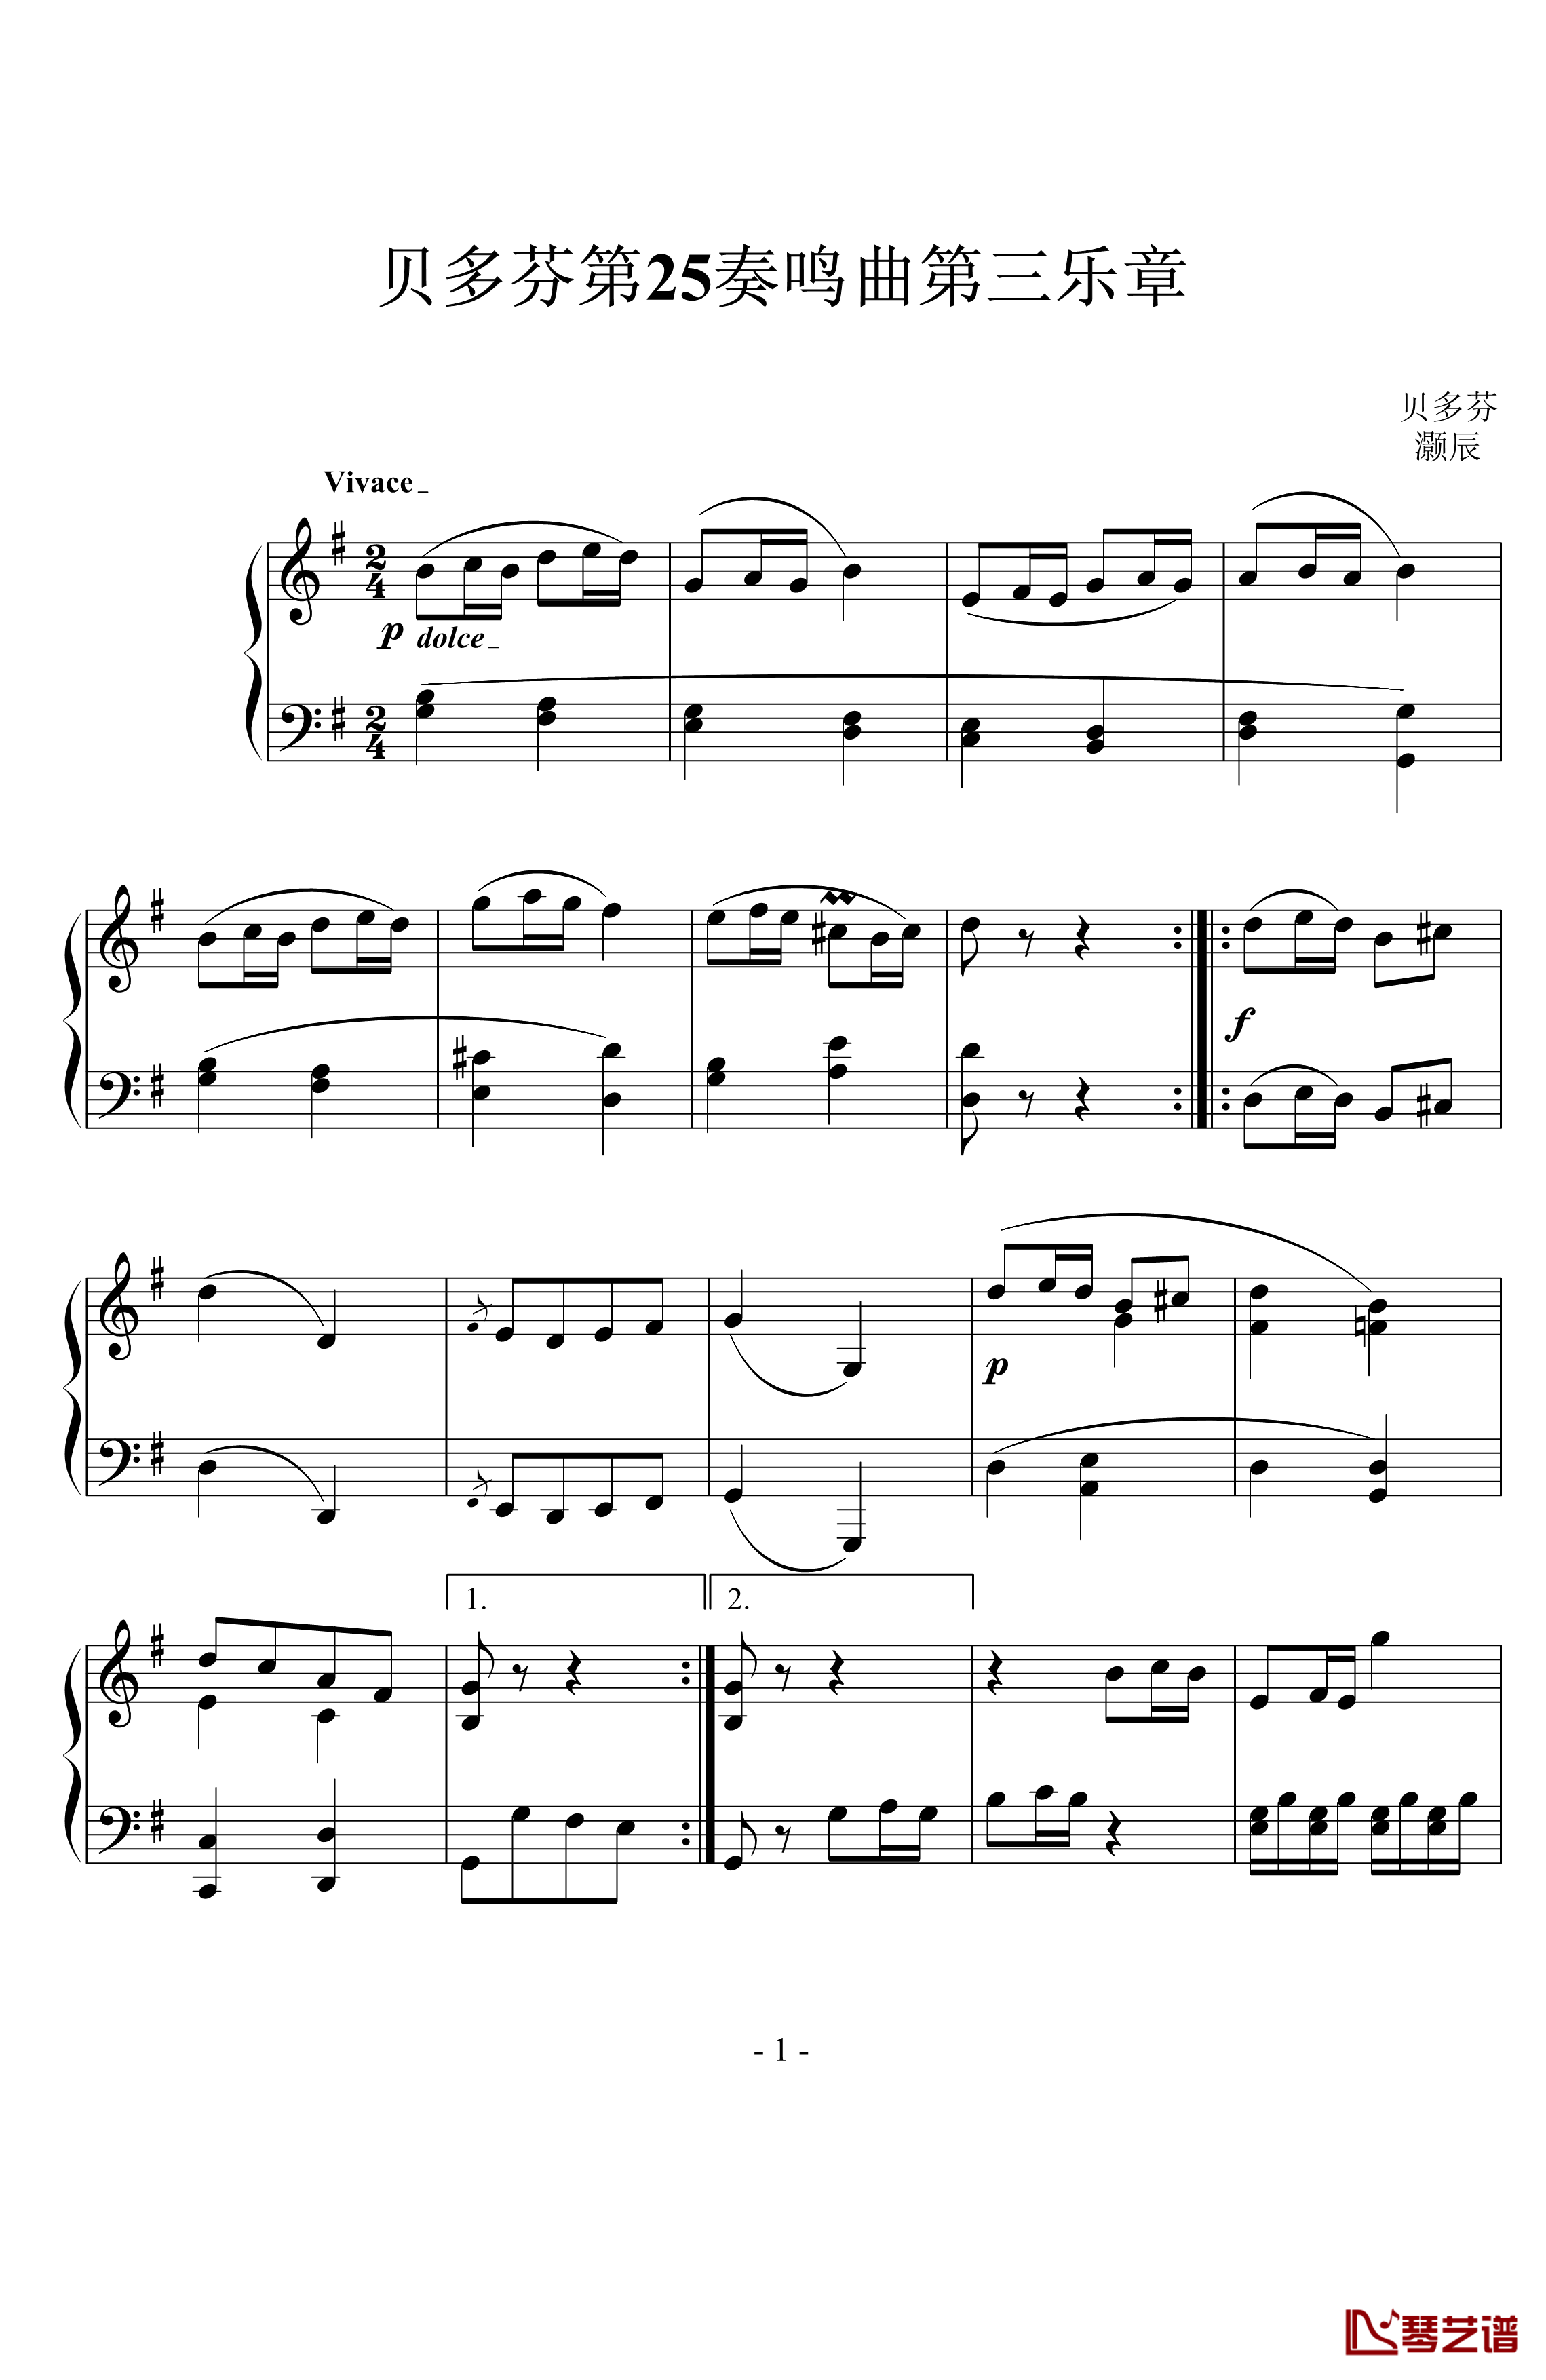 贝多芬第二十五钢琴奏鸣曲钢琴谱-贝多芬-beethoven1